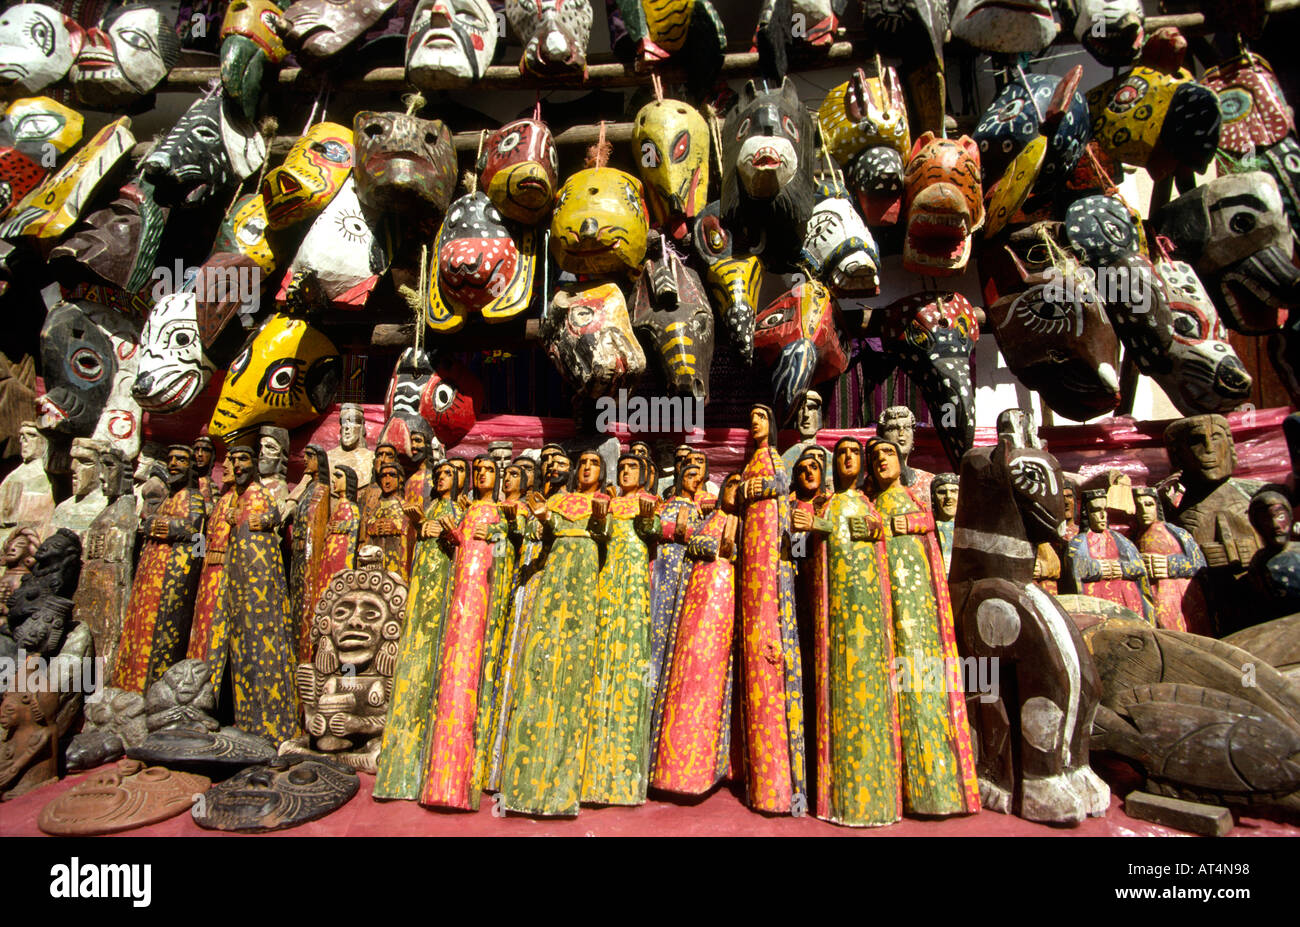 Guatemala Highlands Chichicastenango market mask and puppet stall Stock Photo